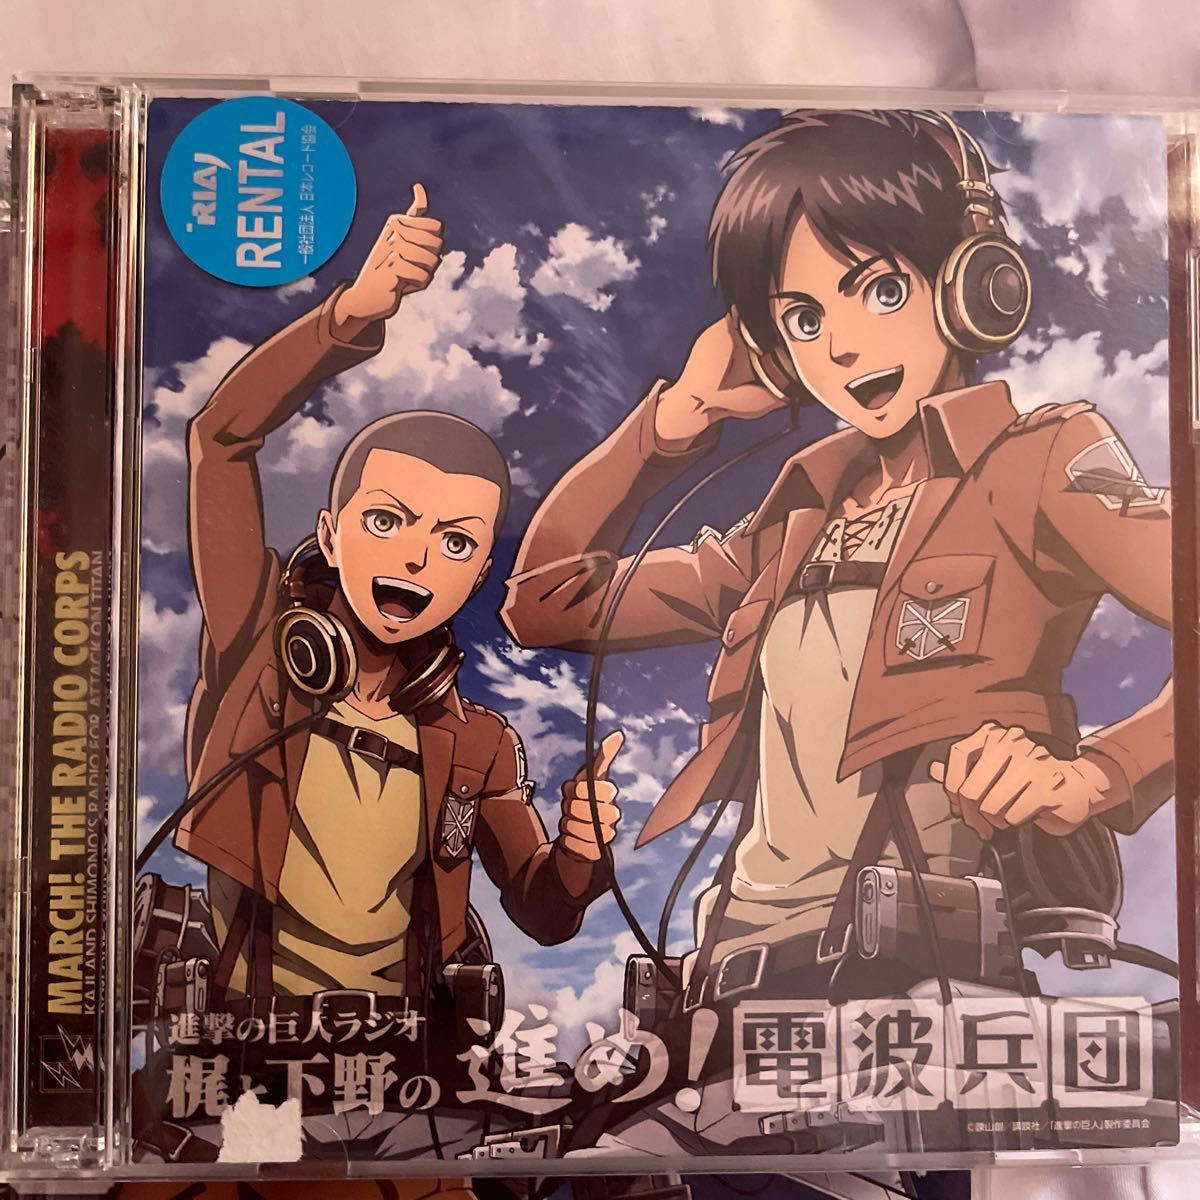 ラジオCD 「進撃の巨人ラジオ~梶と下野の進め! 電波兵団~」 Vol.1 (CD+CD-ROM)